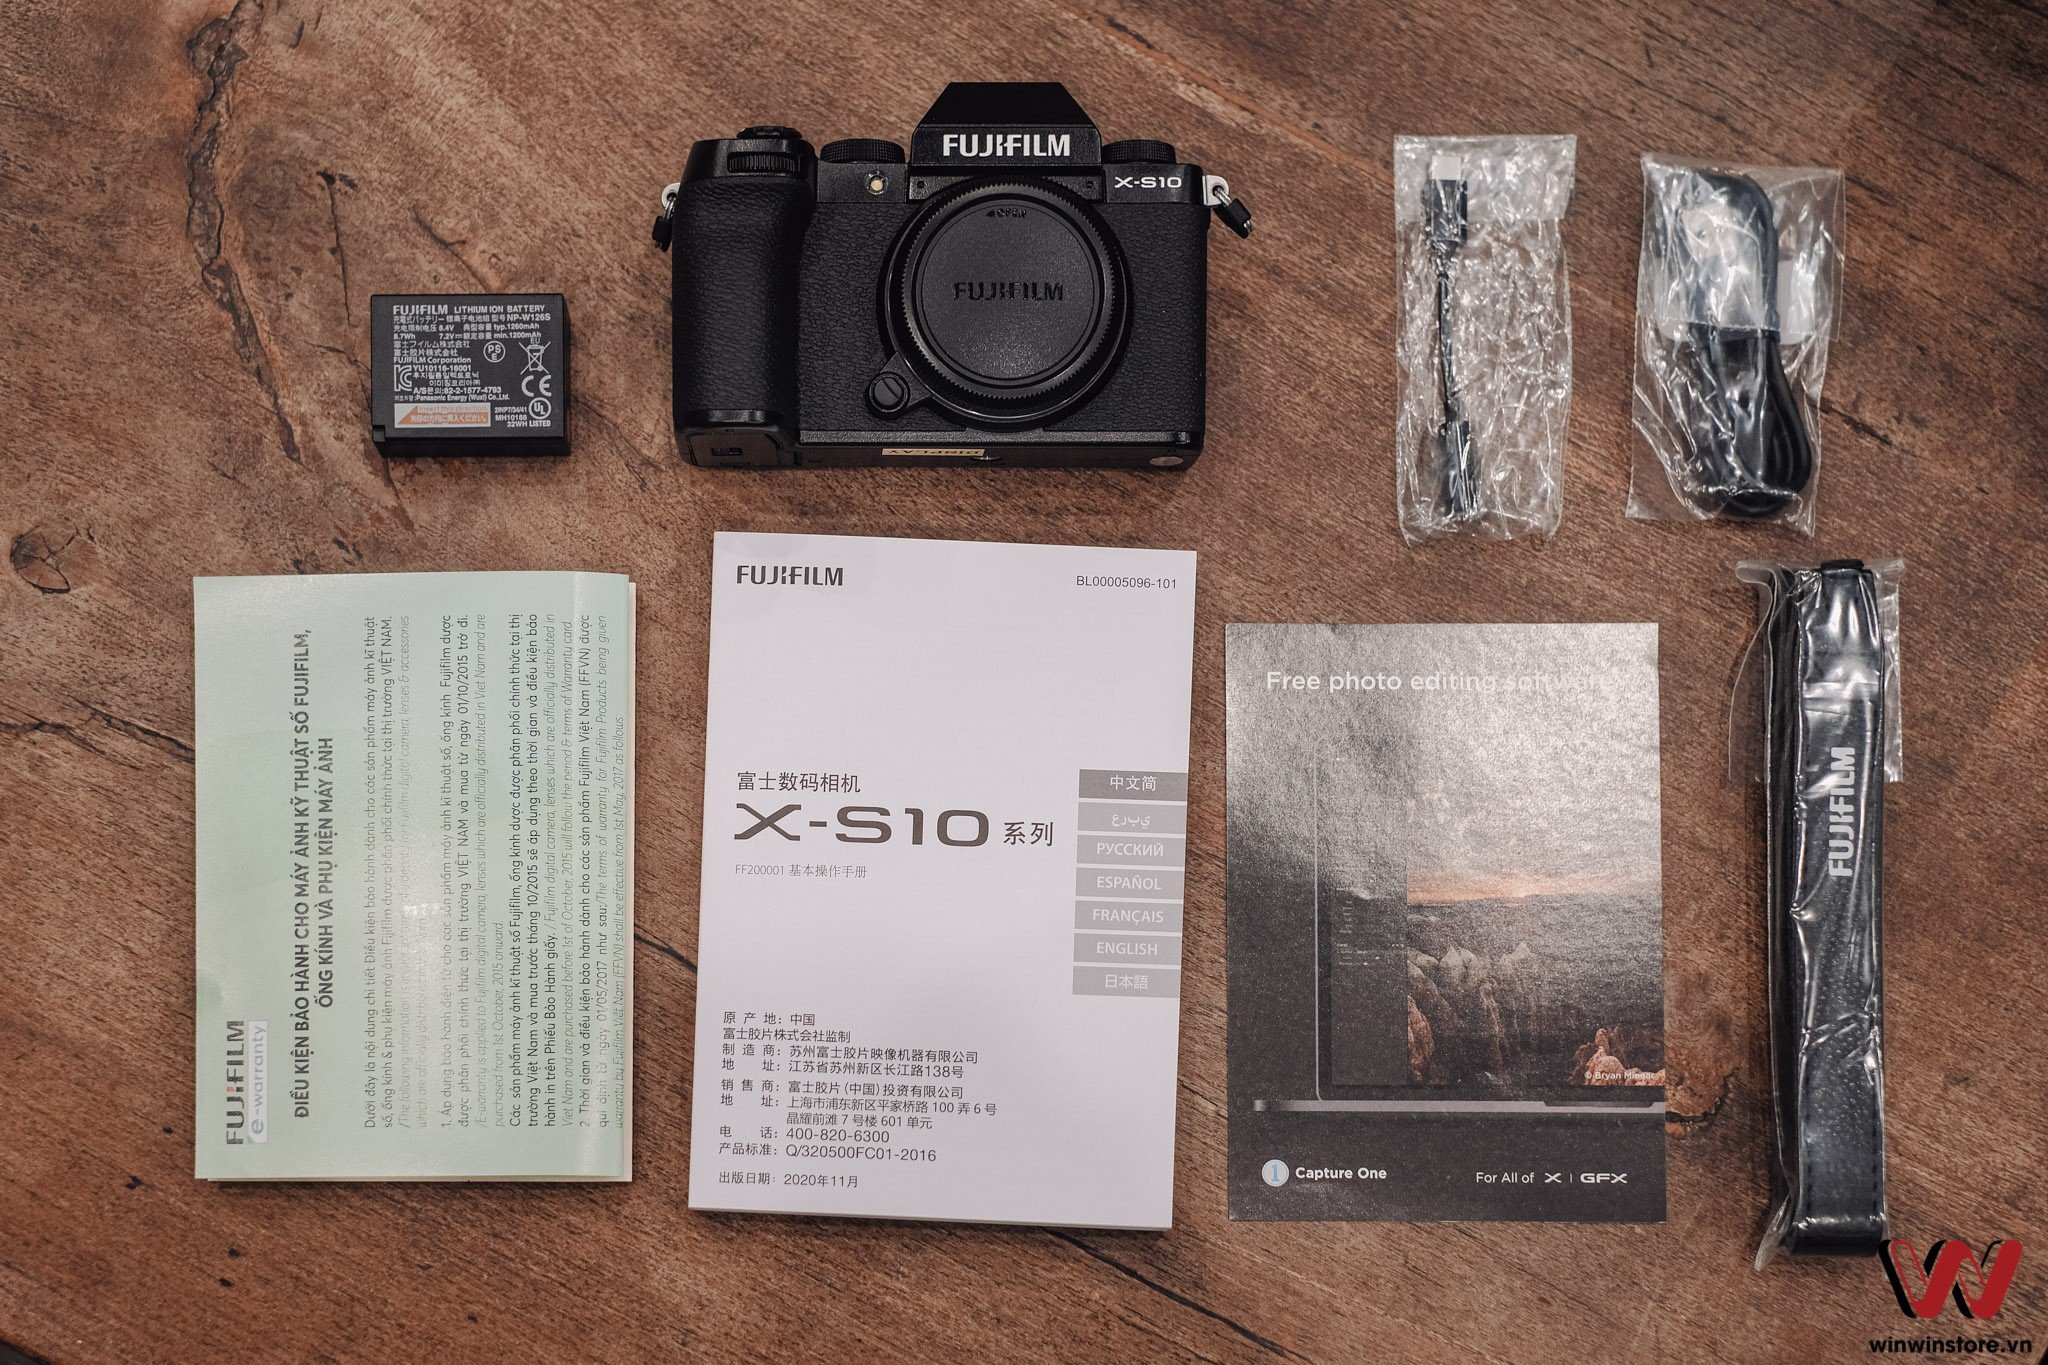 Mở hộp Fujifilm X-S10 chính hãng: Đây là những thứ bạn phải đánh đổi để có được hiệu năng X-T4 trong mức giá X-T30